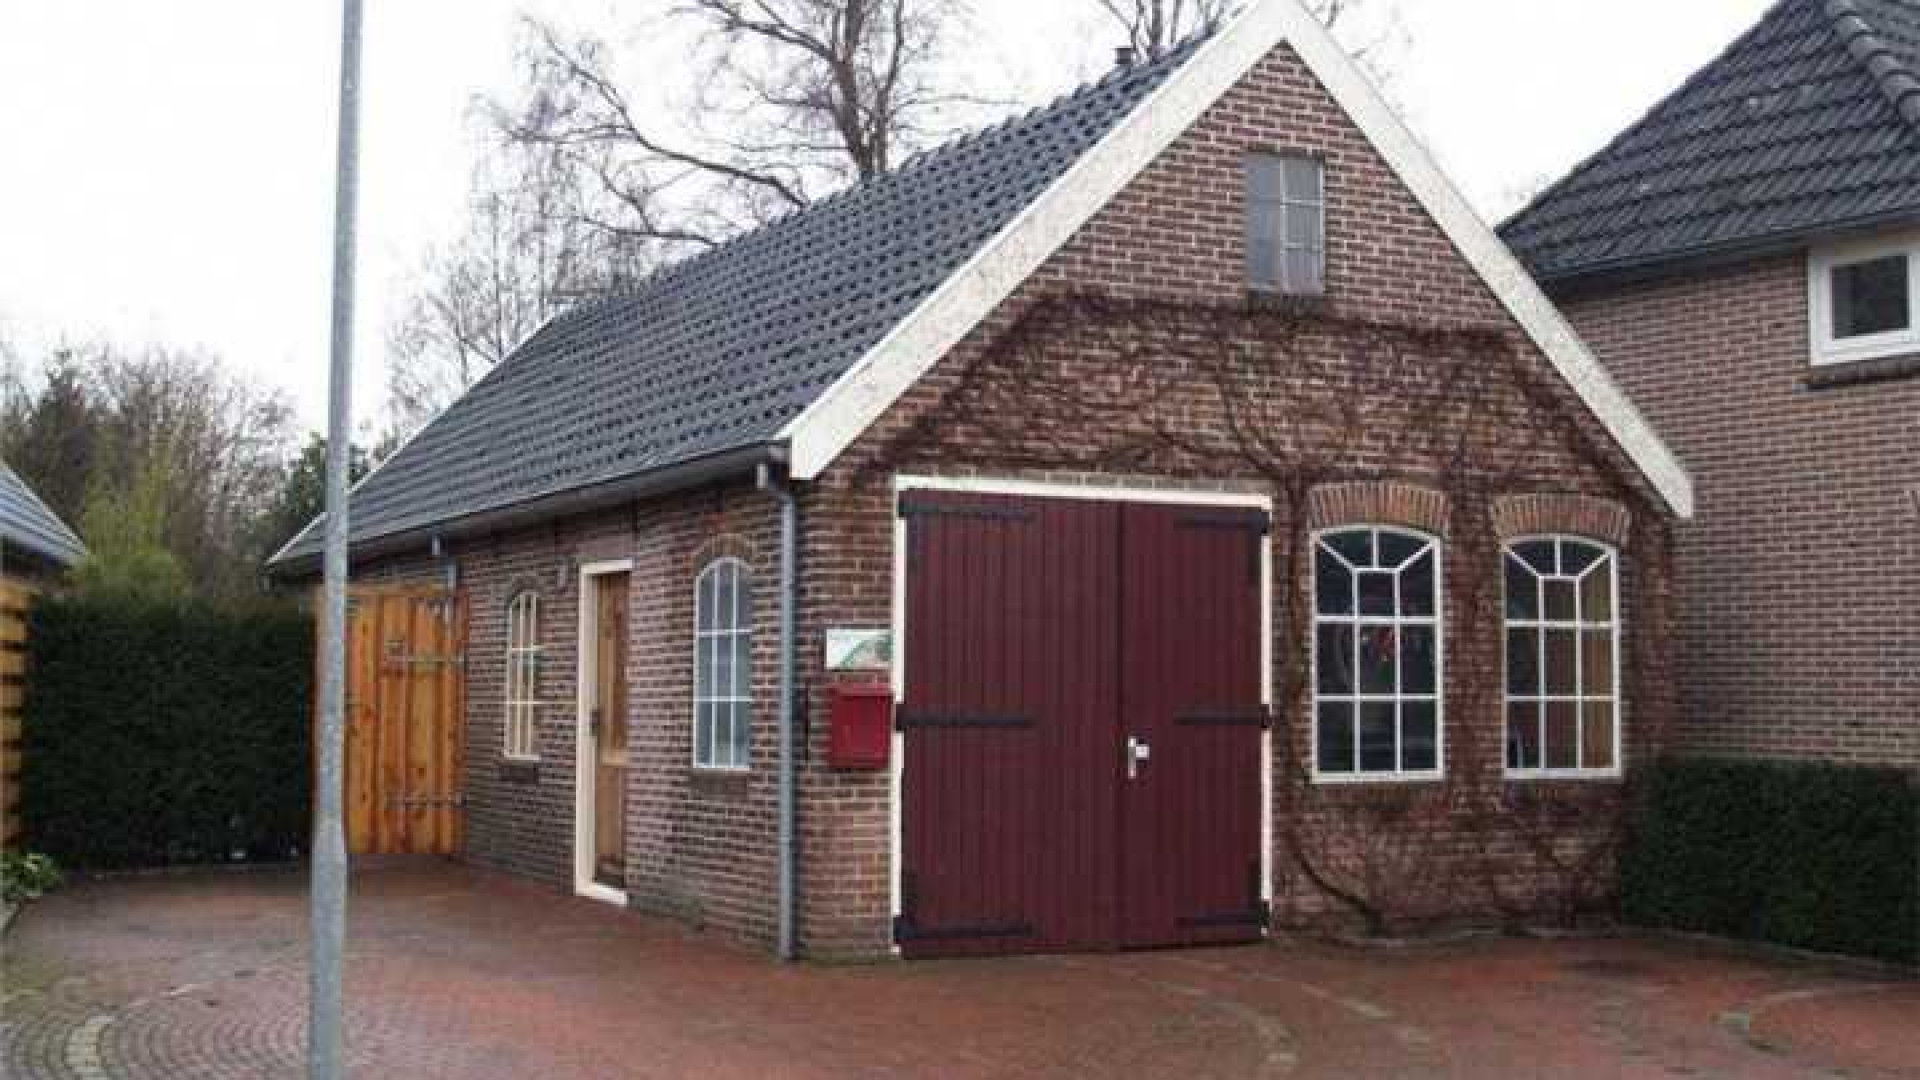 Johan Derksen koopt huis met voor hem sterke emotionele waarde. Zie foto's 2